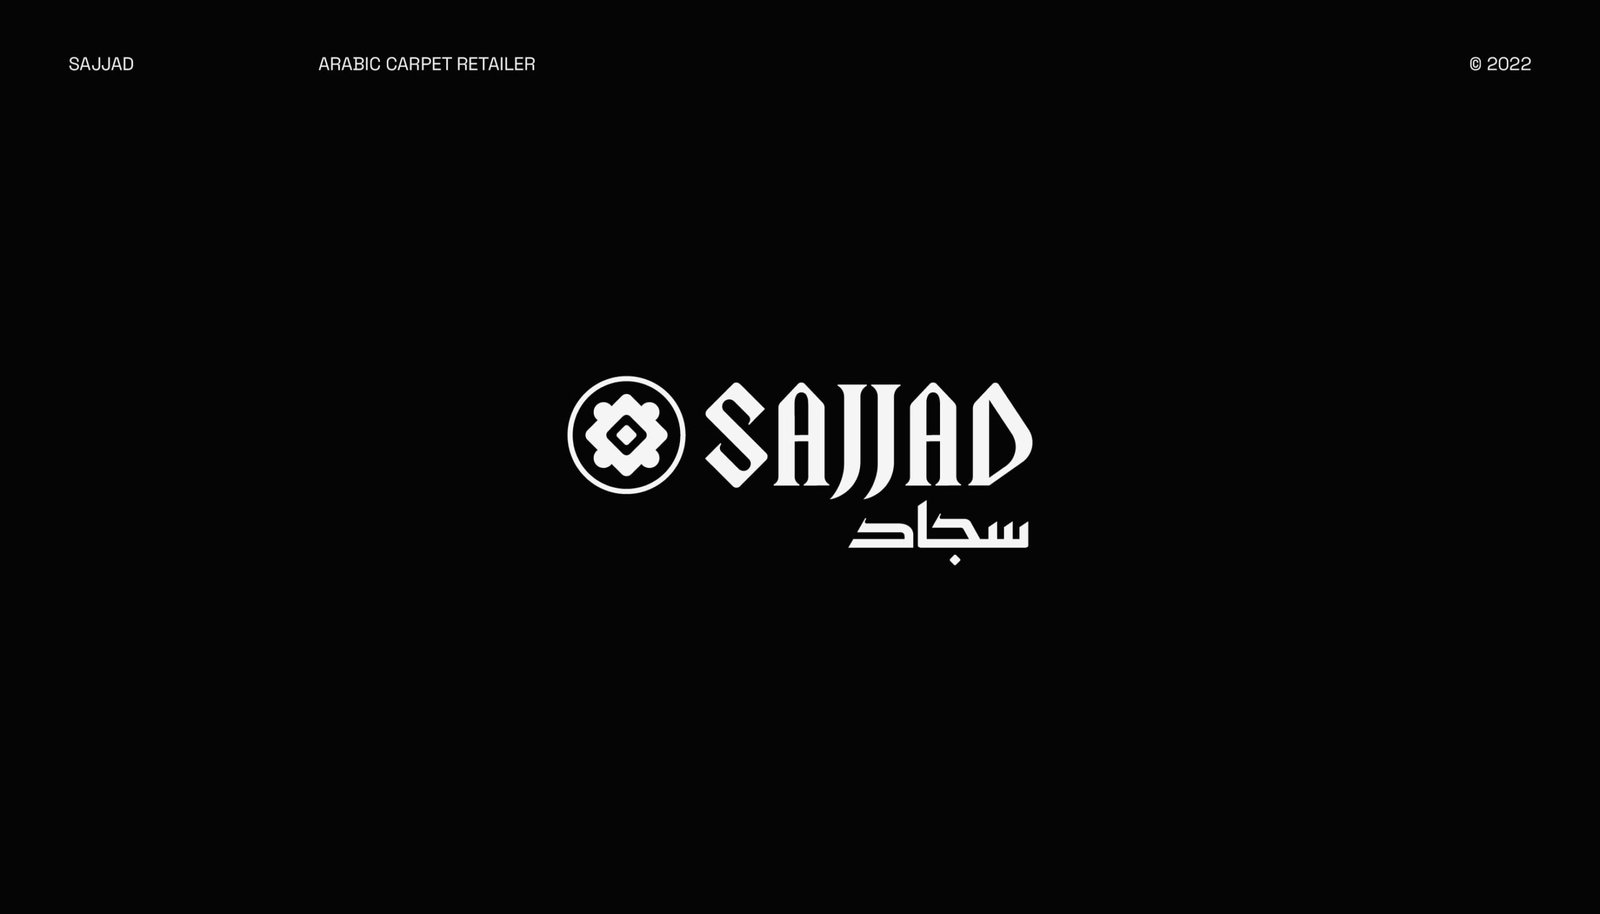 logo design for a carpet company called sajjad